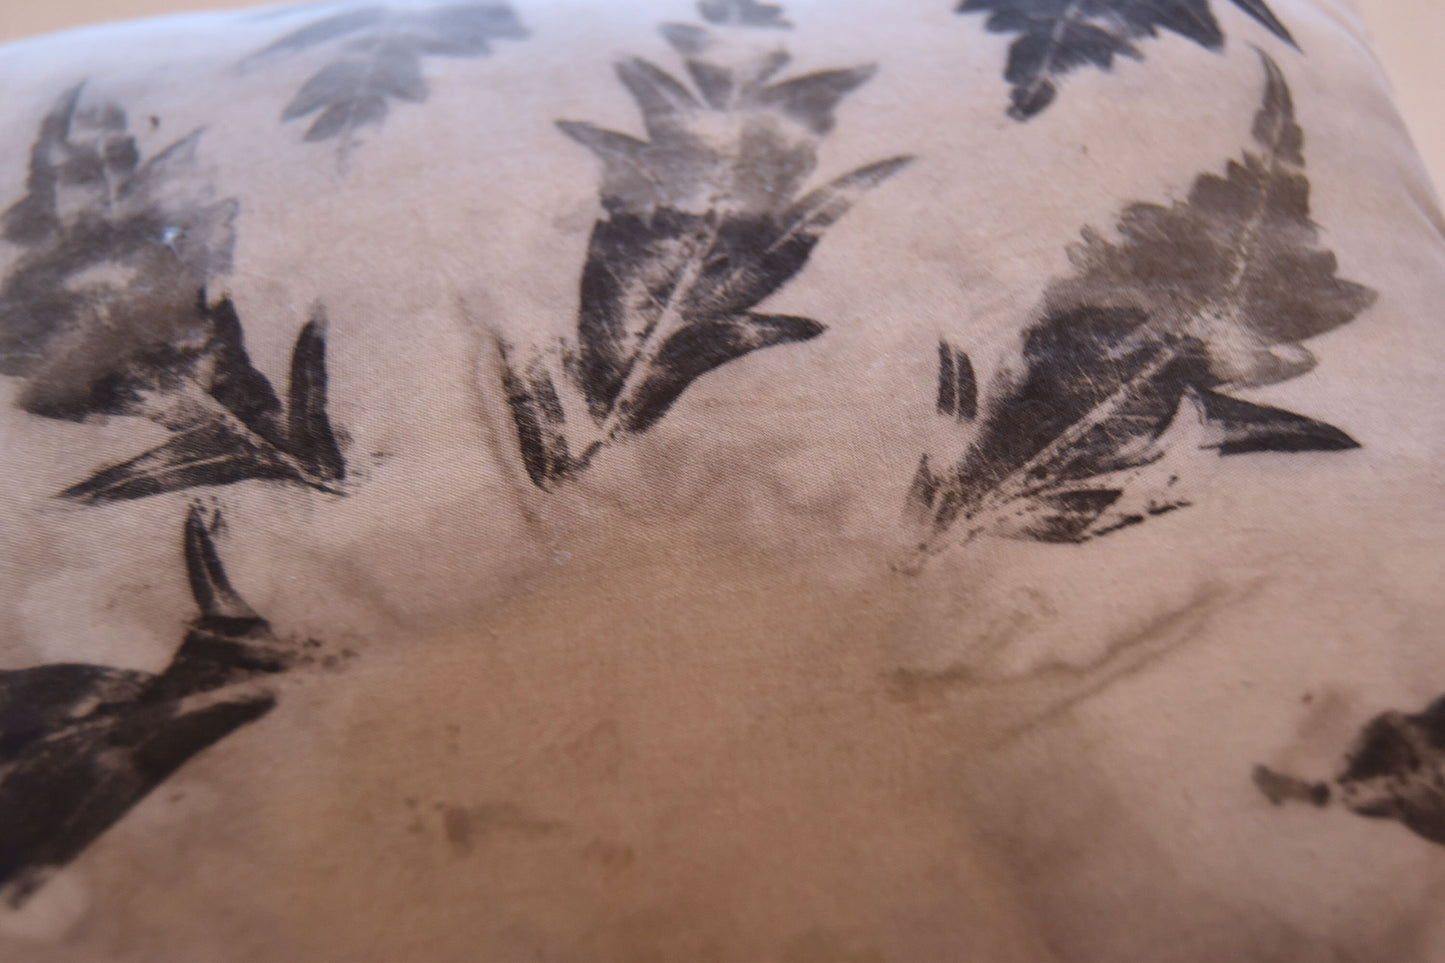 Tataki zome pillow - Botanical print - natural dye